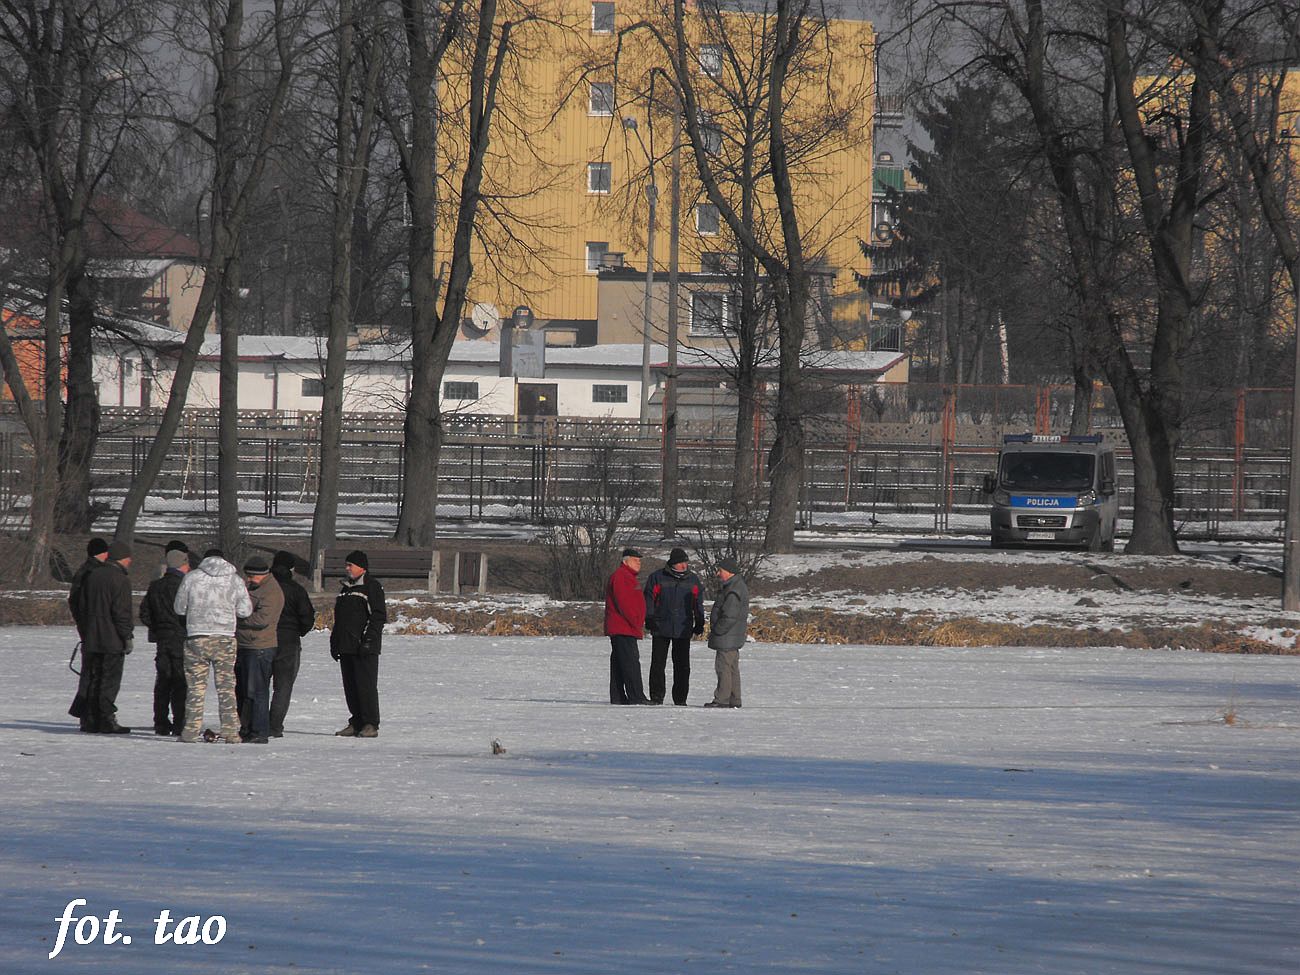 Wiercenie w lodzie na Jezirkach, jak wida bezpieczne, 12.02.2012 r.